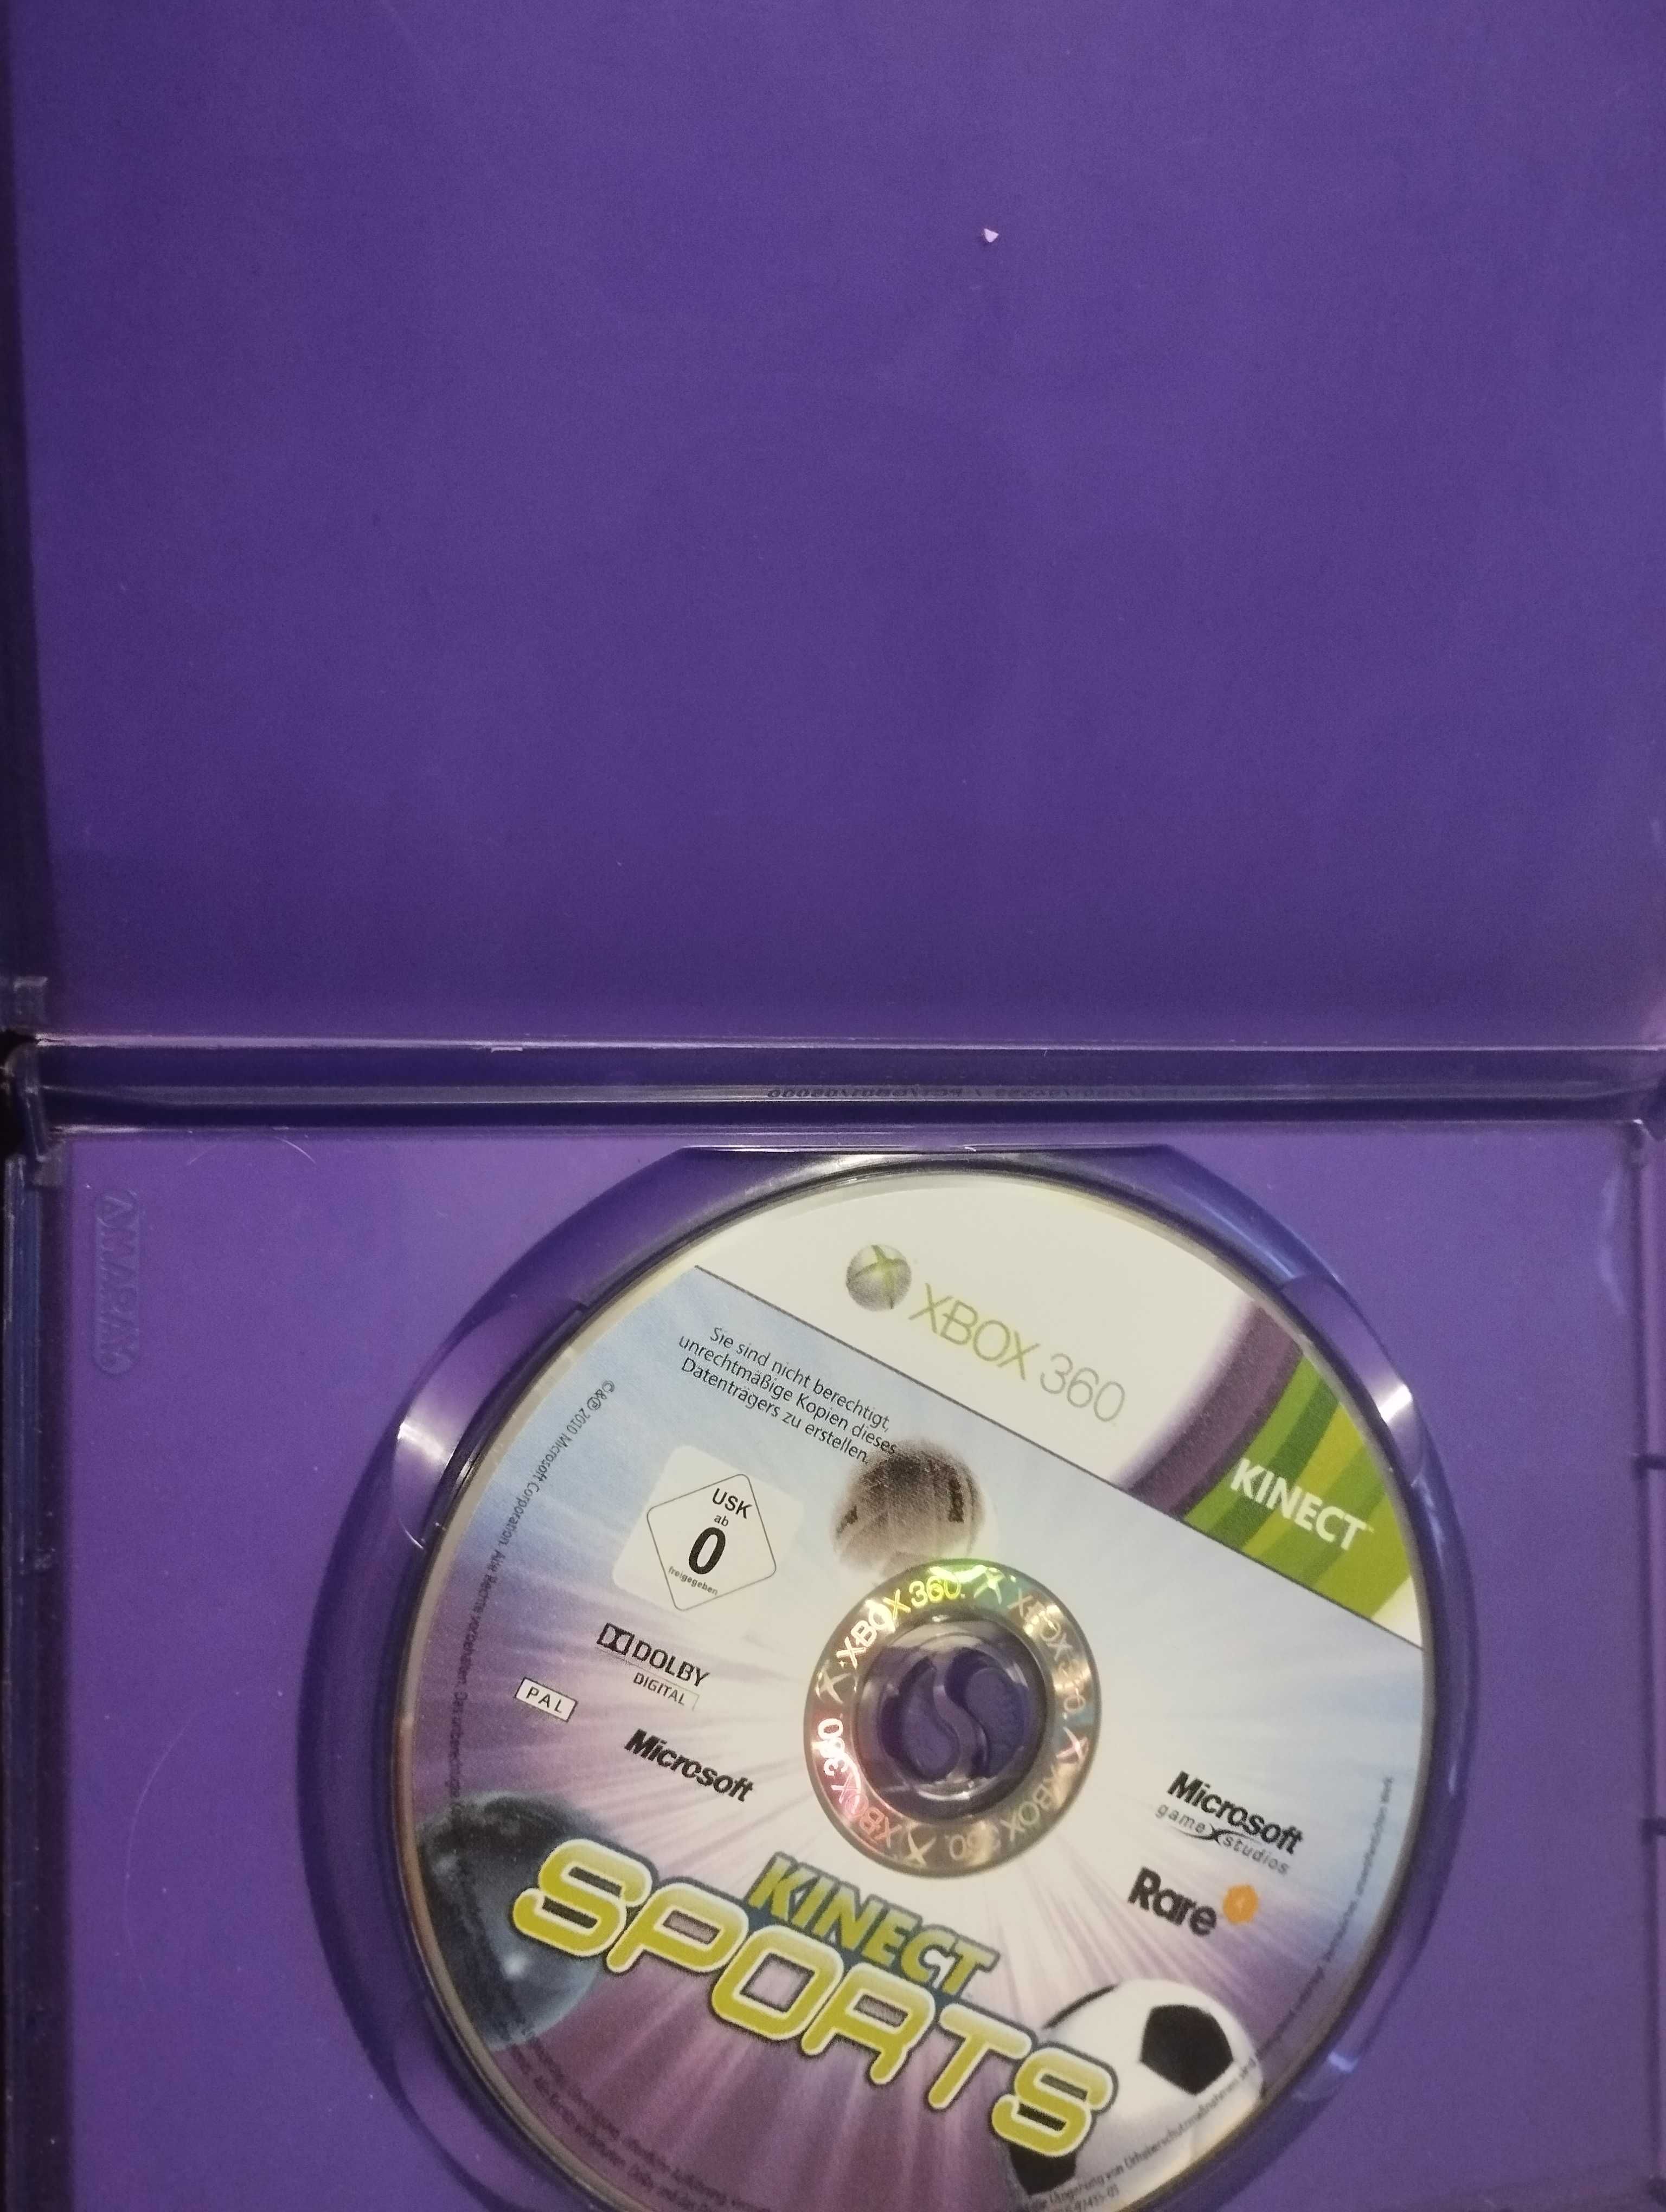 Gra na konsole Xbox 360 gra pod tytułem "KINEKT SPORTS"